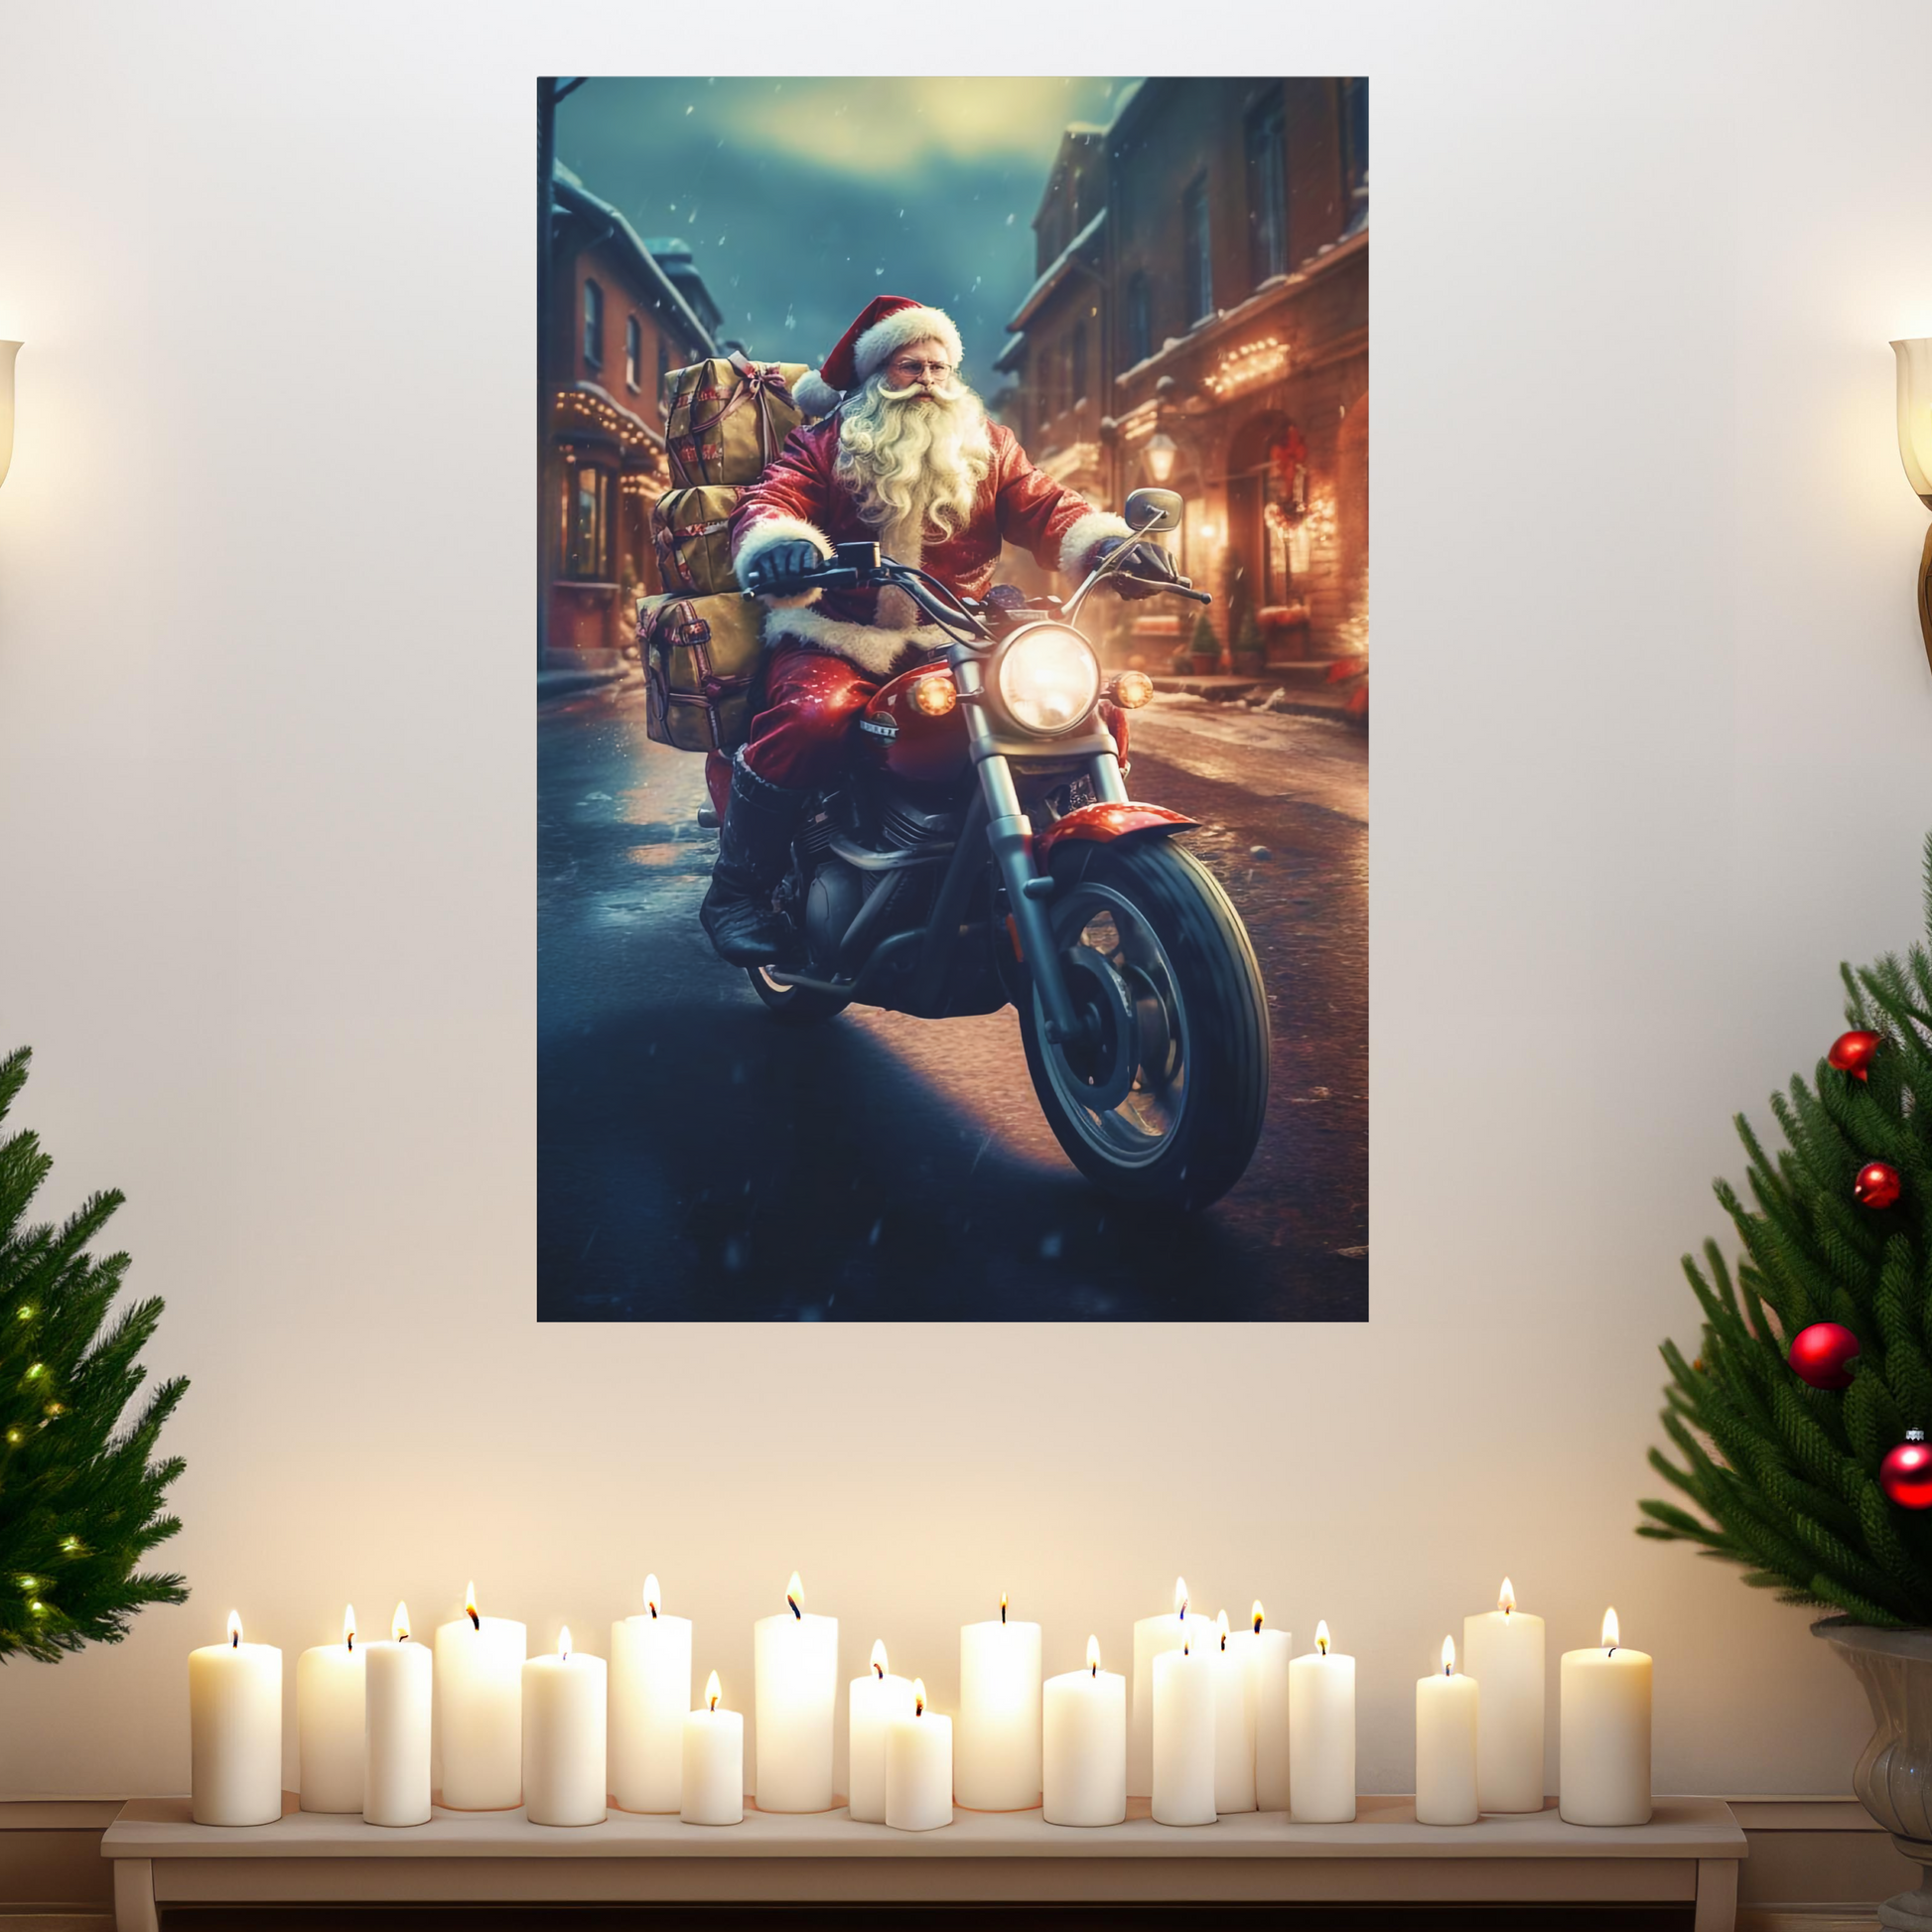 santa riding motorcycle wall art decor